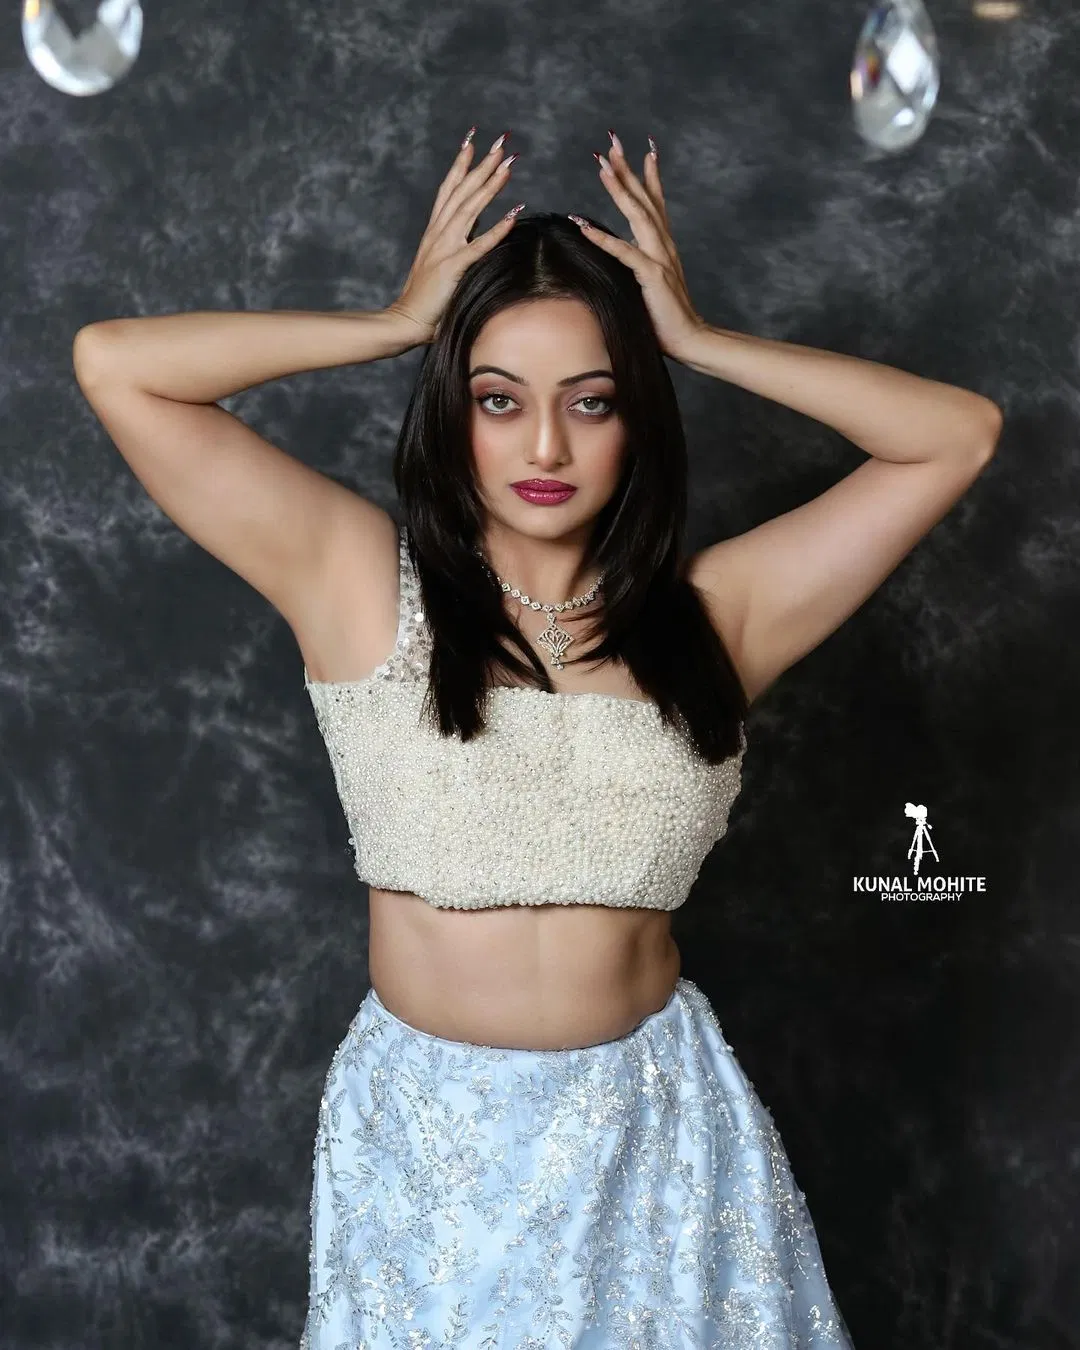 Manasi Naik : à¤®à¤¾à¤¨à¤¸à¥€ à¤«à¤¿à¤—à¤° à¤¦à¤¾à¤–à¤µà¤¤ à¤®à¥à¤¹à¤£à¤¾à¤²à¥€, à¤¬à¤‚à¤¦à¤¾ à¤—à¥à¤°à¥‡à¤Ÿ à¤ªà¤° à¤®à¤¿à¤²à¤¾ à¤²à¥‡à¤Ÿ â€“ TV9  Marathi | Lavani Queen Marathi Actress Manasi Naik Hot Look Photo Viral  Au132